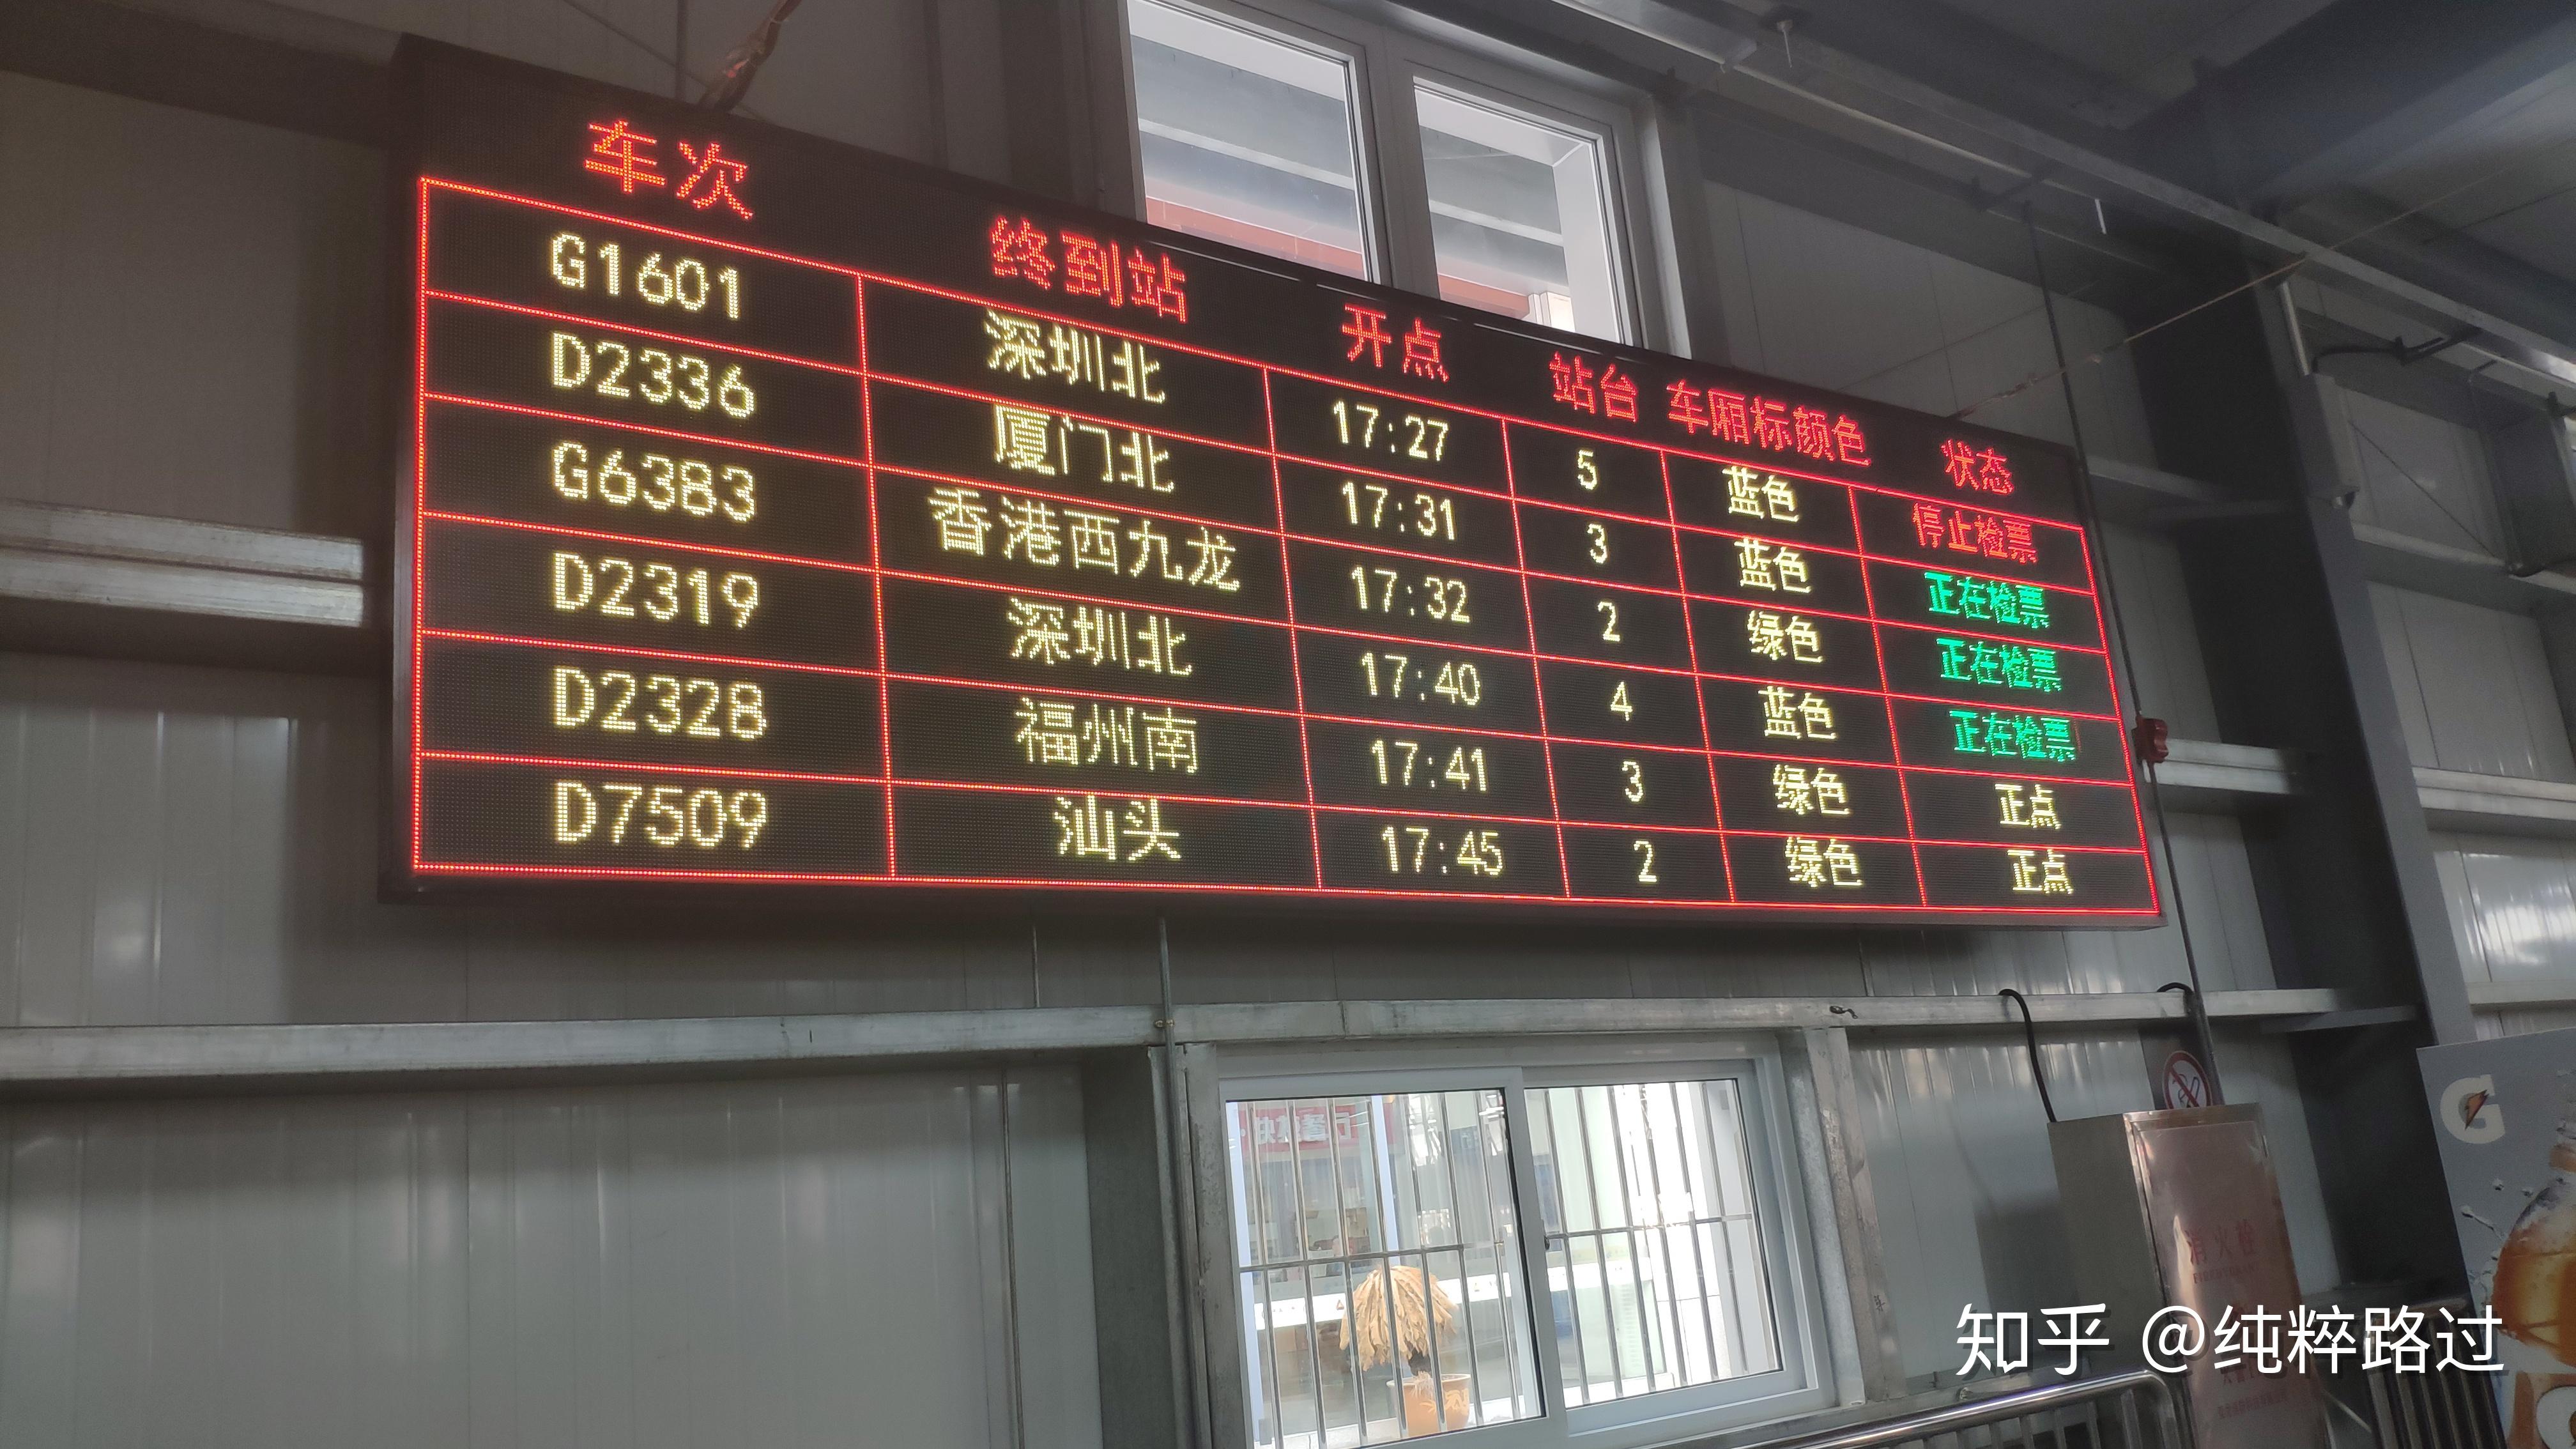 3月5日起 东营火车站往返济南、陵城旅客车执行新时刻表_ 东营_鲁中网